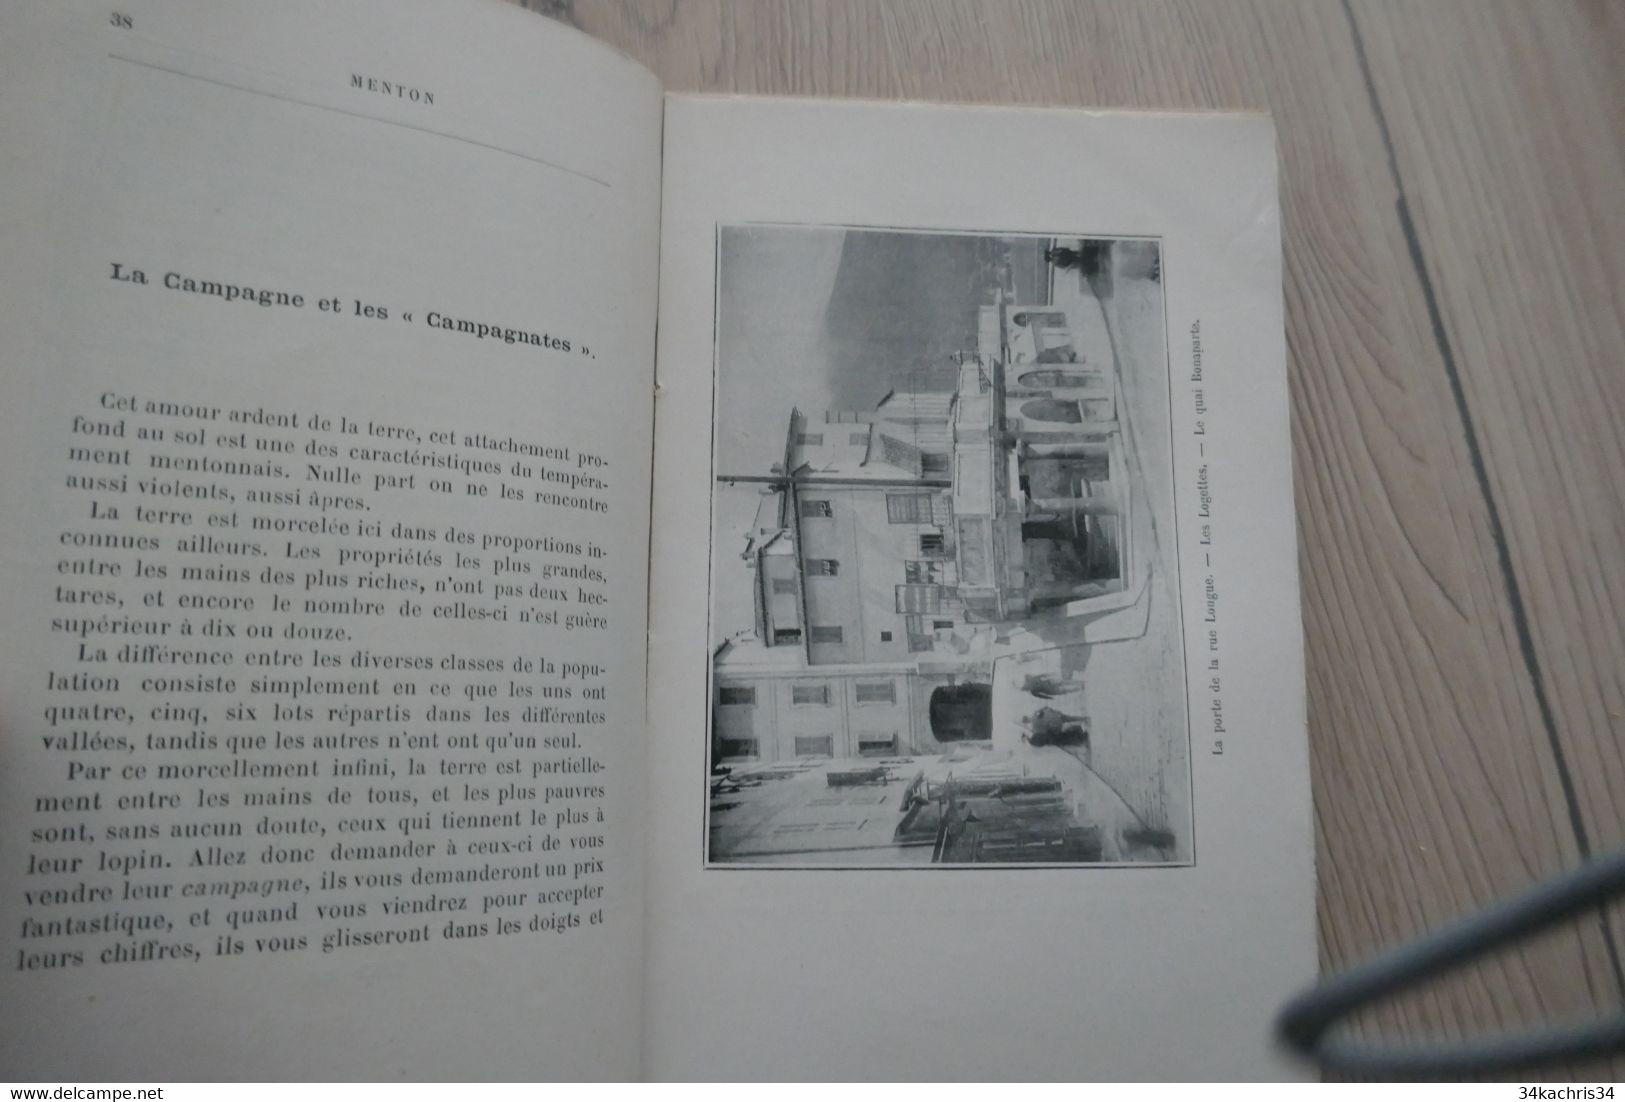 J. Desverignanes. Menton 128p et 40 illustrations + pub et cachet grand hôtel Victoria 1898 TBE